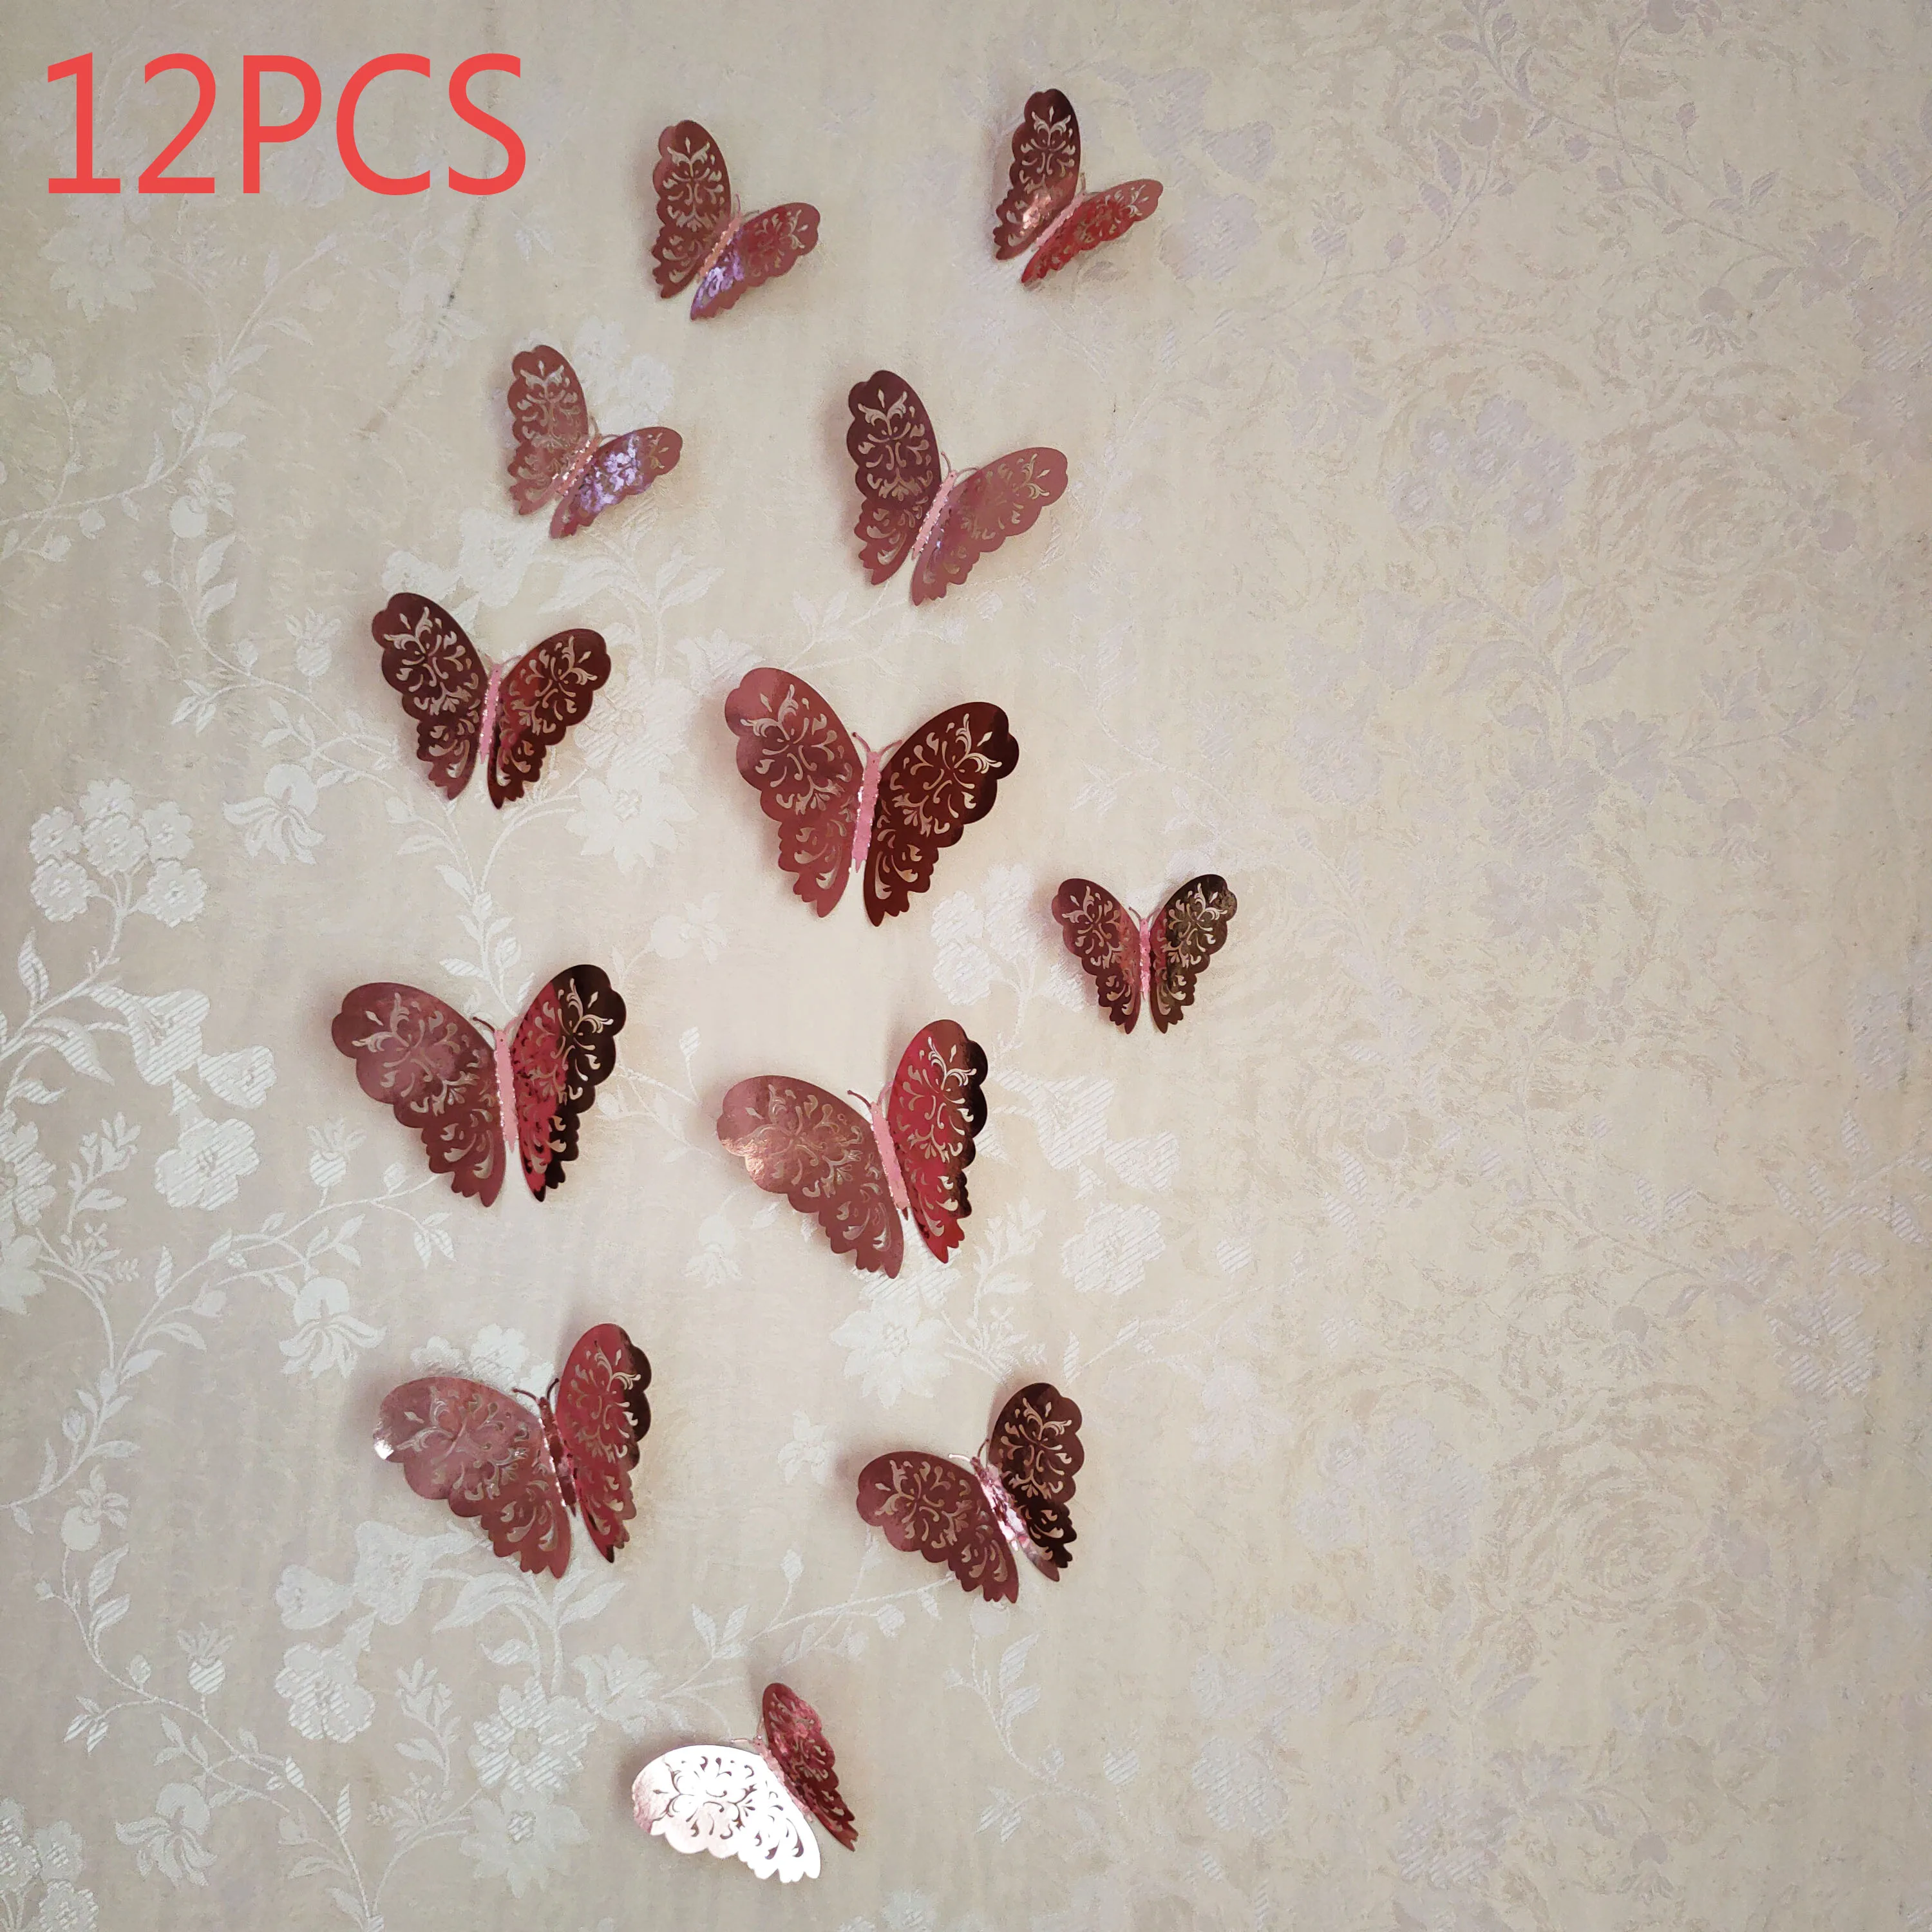 12 Adet / takım İçi Boş 3D Kelebek duvar çıkartmaları Düğün Dekorasyon Ev Dekorasyon Altın ve Gümüş Kelebek Çıkartmalar Çıkartmalar